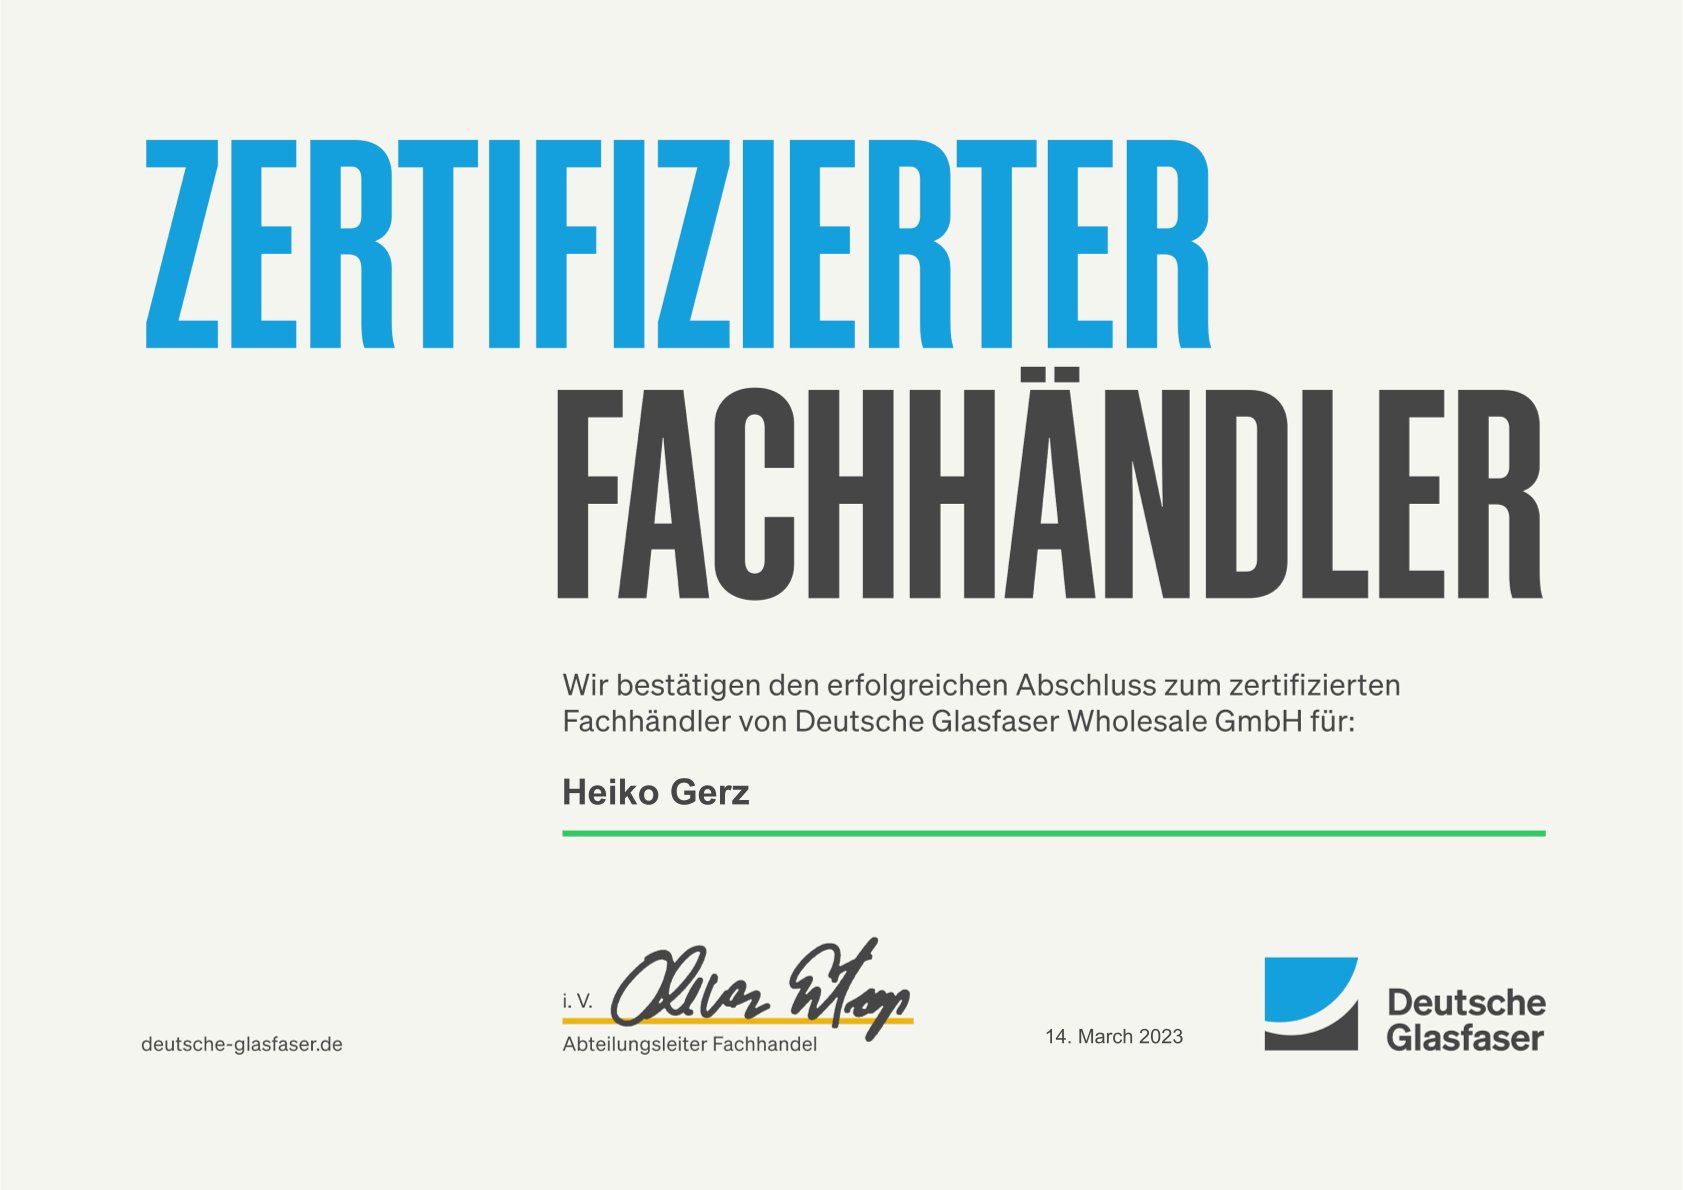 Deutsche Glasfaser Zertifizierter Fachhaendler 2023 Heiko Gerz